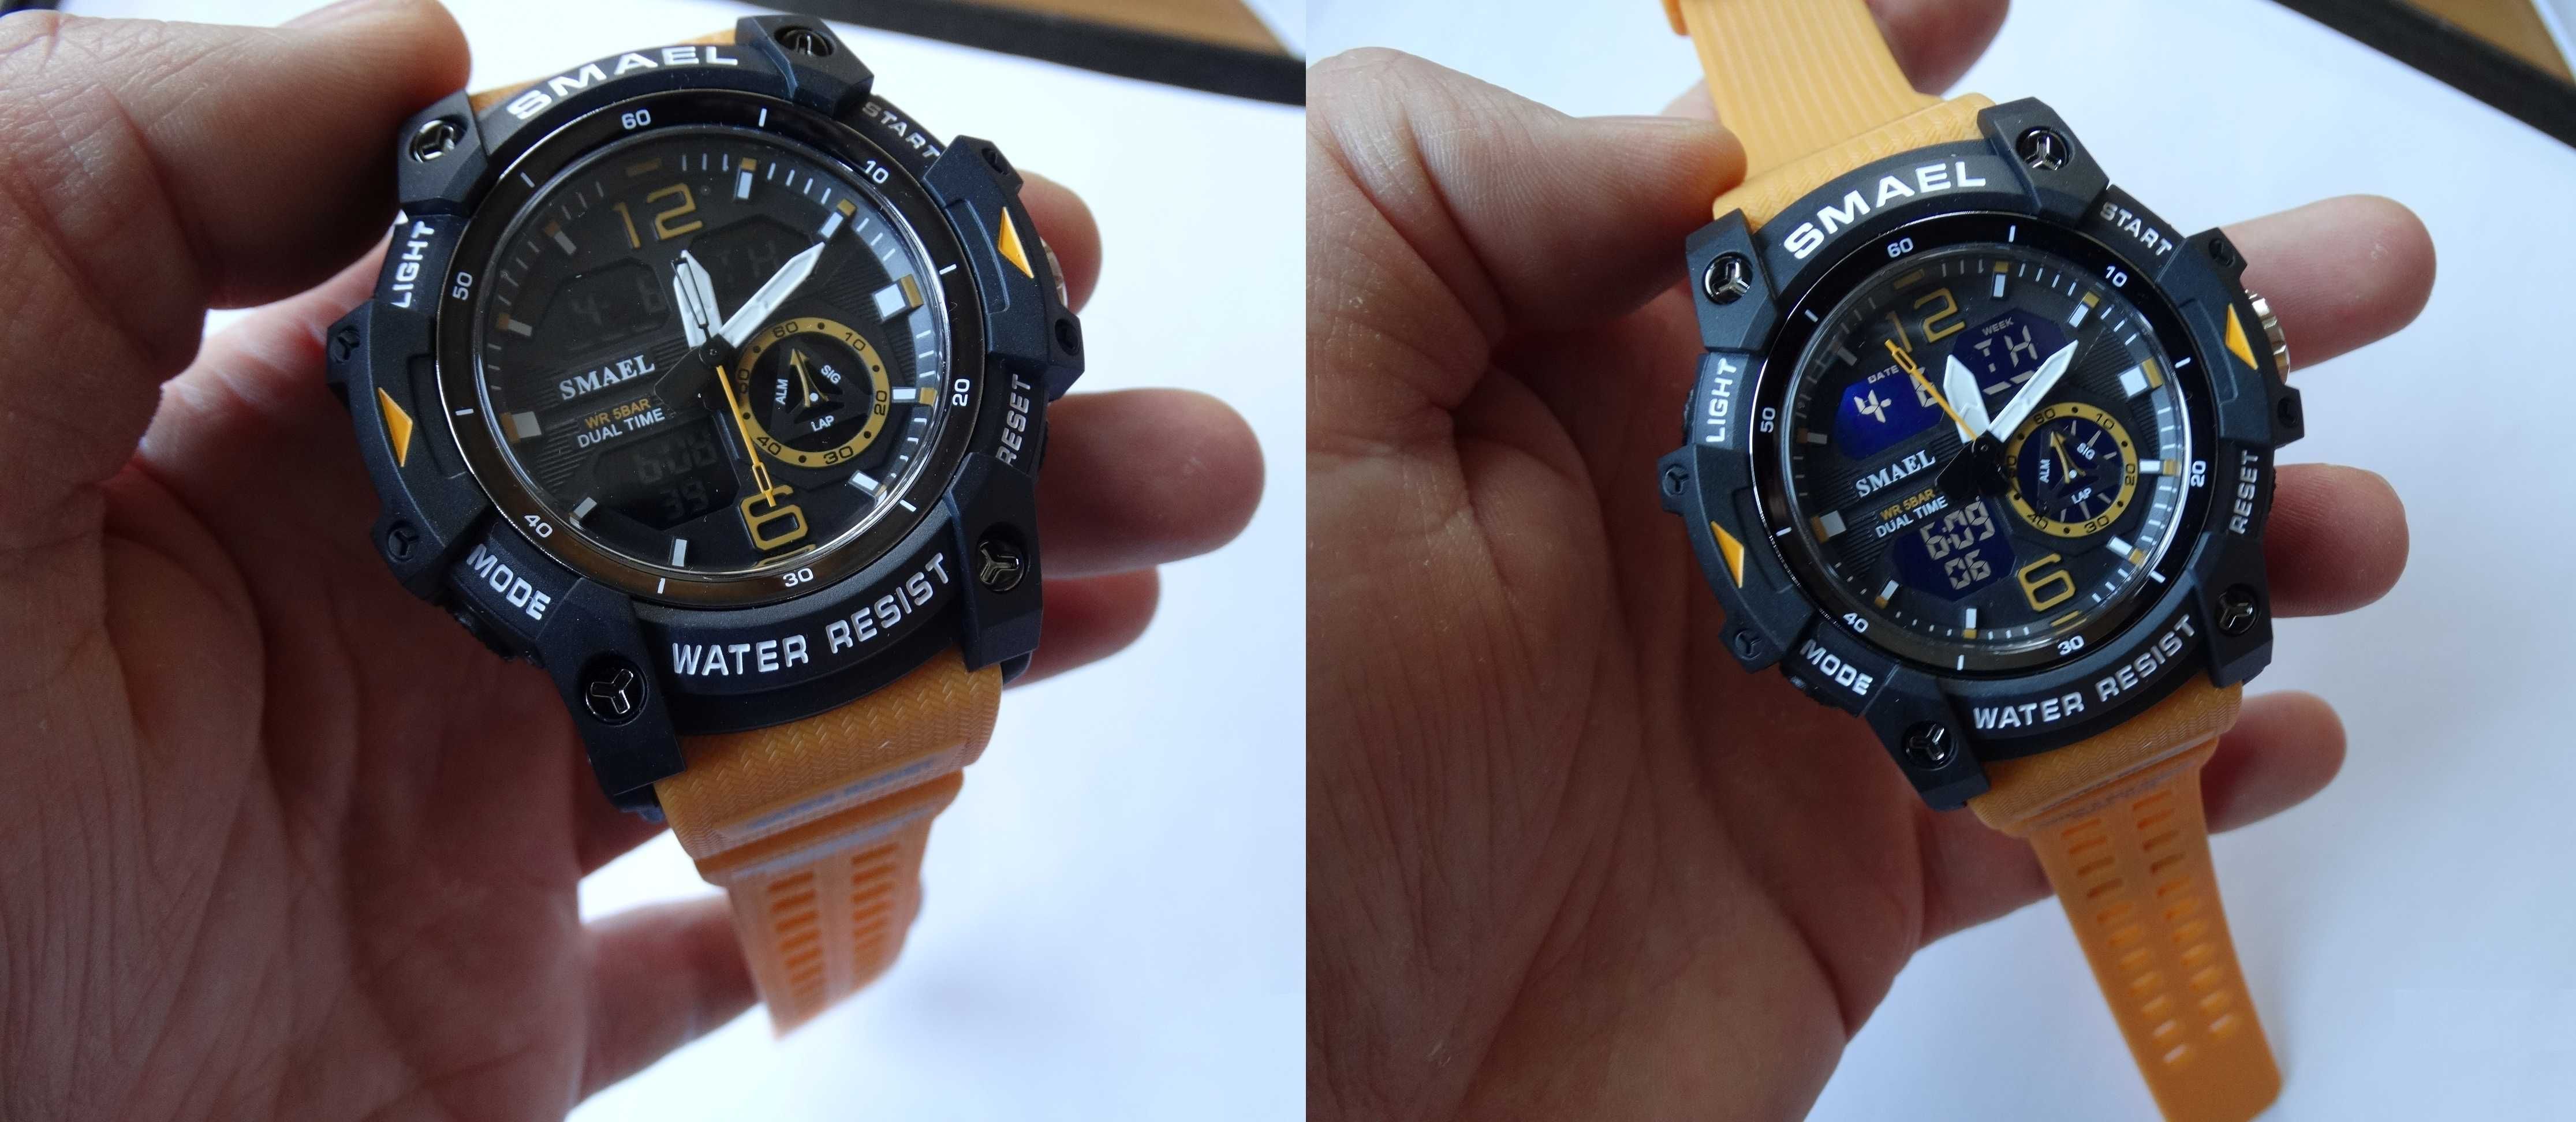 Mlitarny Zegarek Smael pomarańczowy wojskowy elektroniczny sportowy